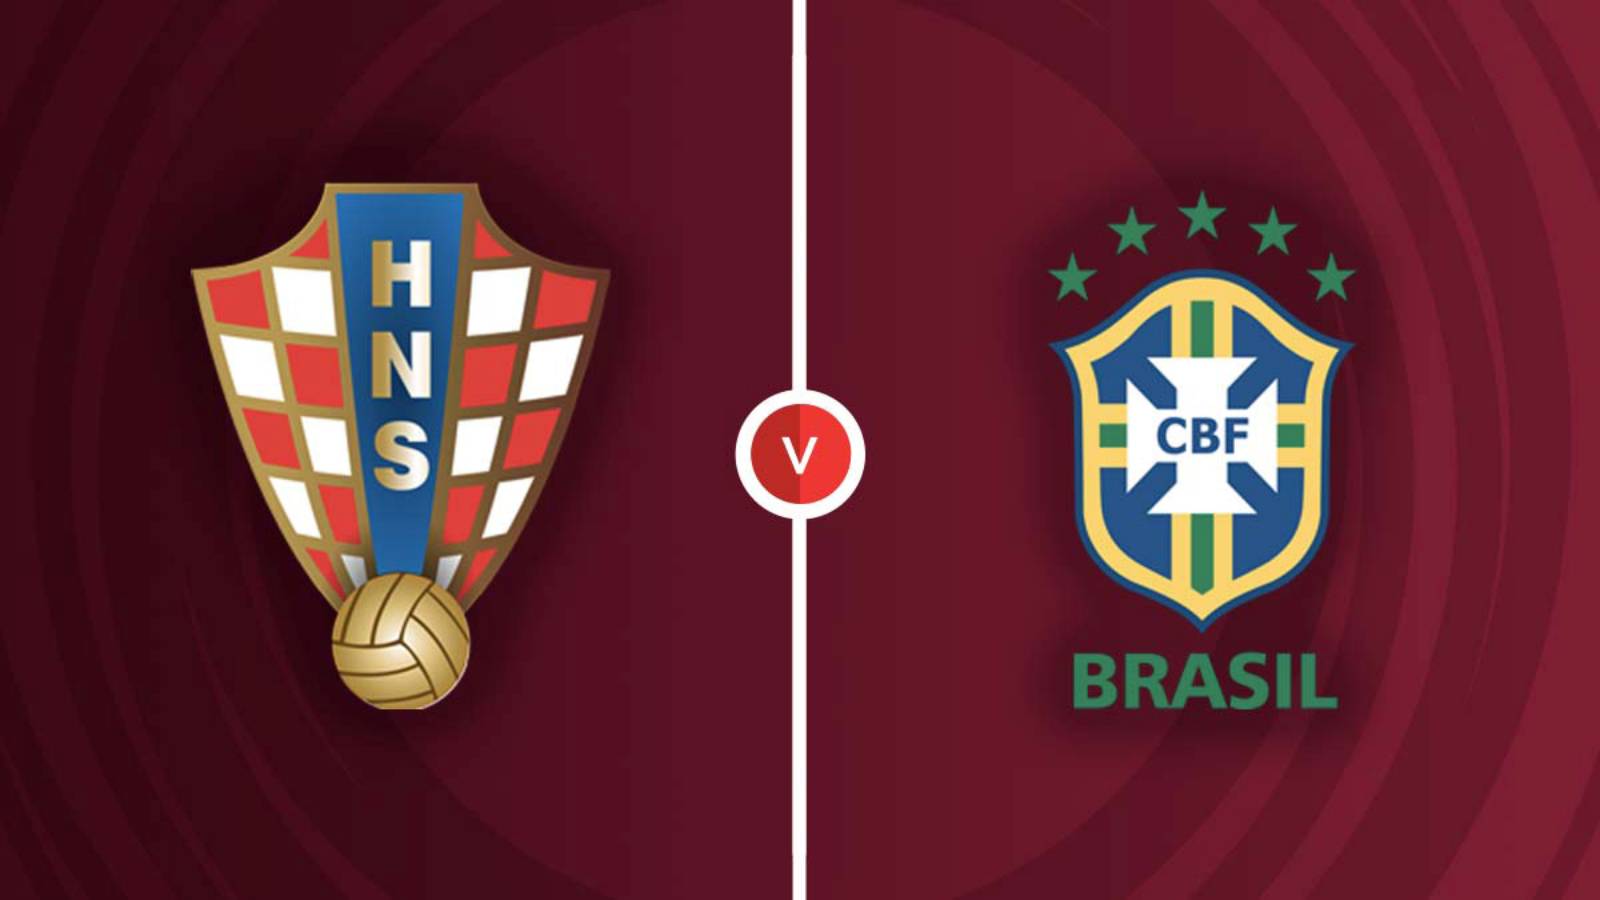 CROATIE – BRÉSIL LIVE TVR 1 CHAMPIONNAT DU MONDE 2022 QATAR